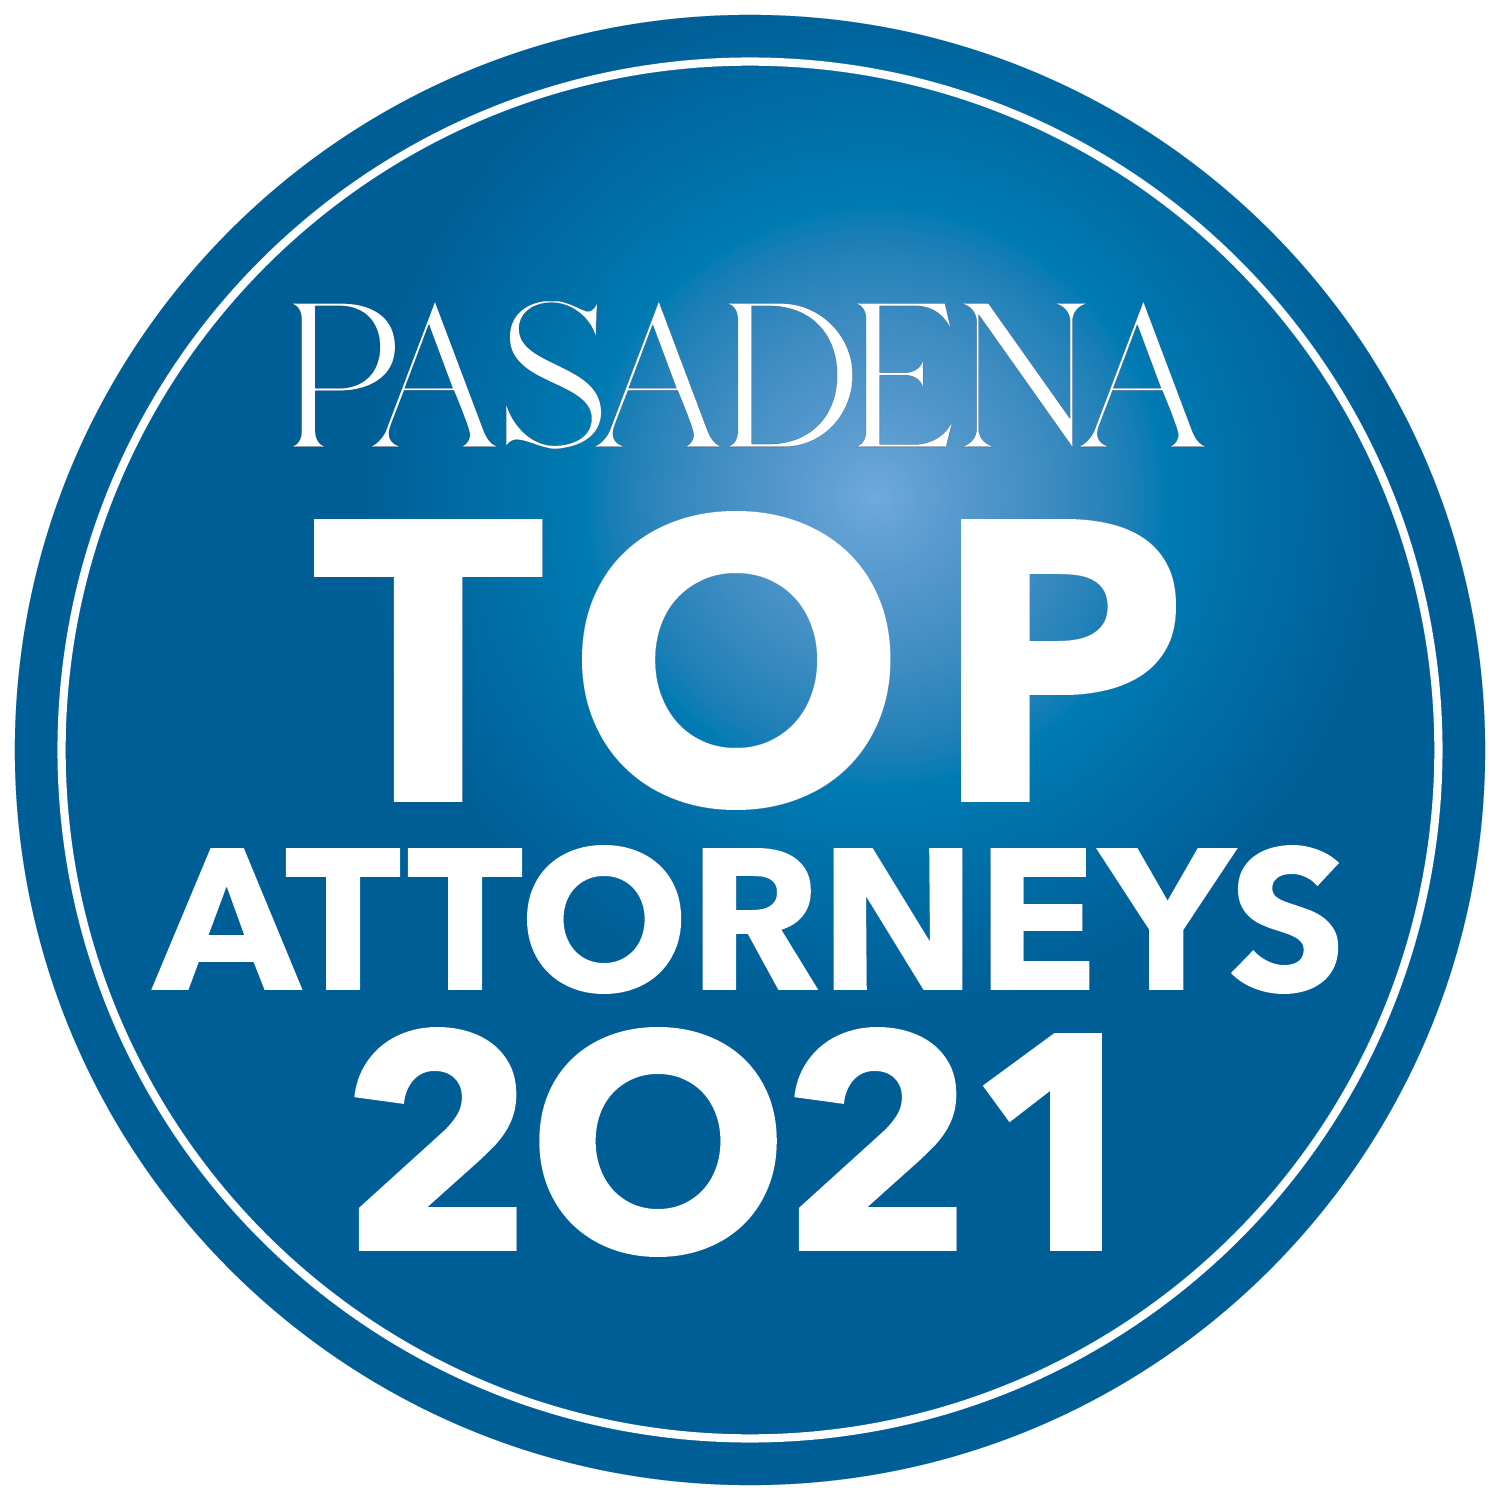 Pasadena Top Attorneys 2021